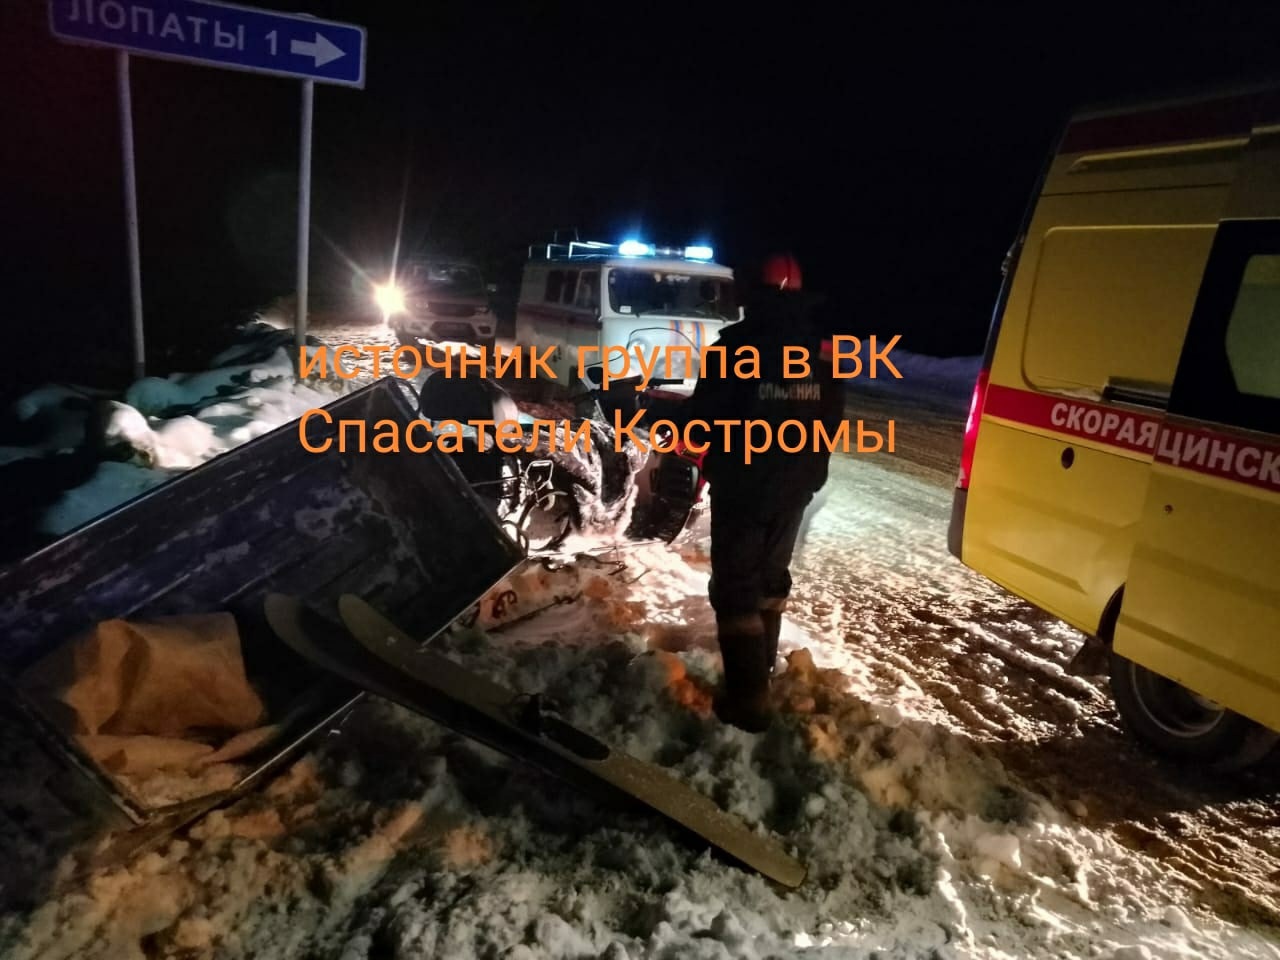 Поездка на снегоходе в костромском посёлке закончилась больницей